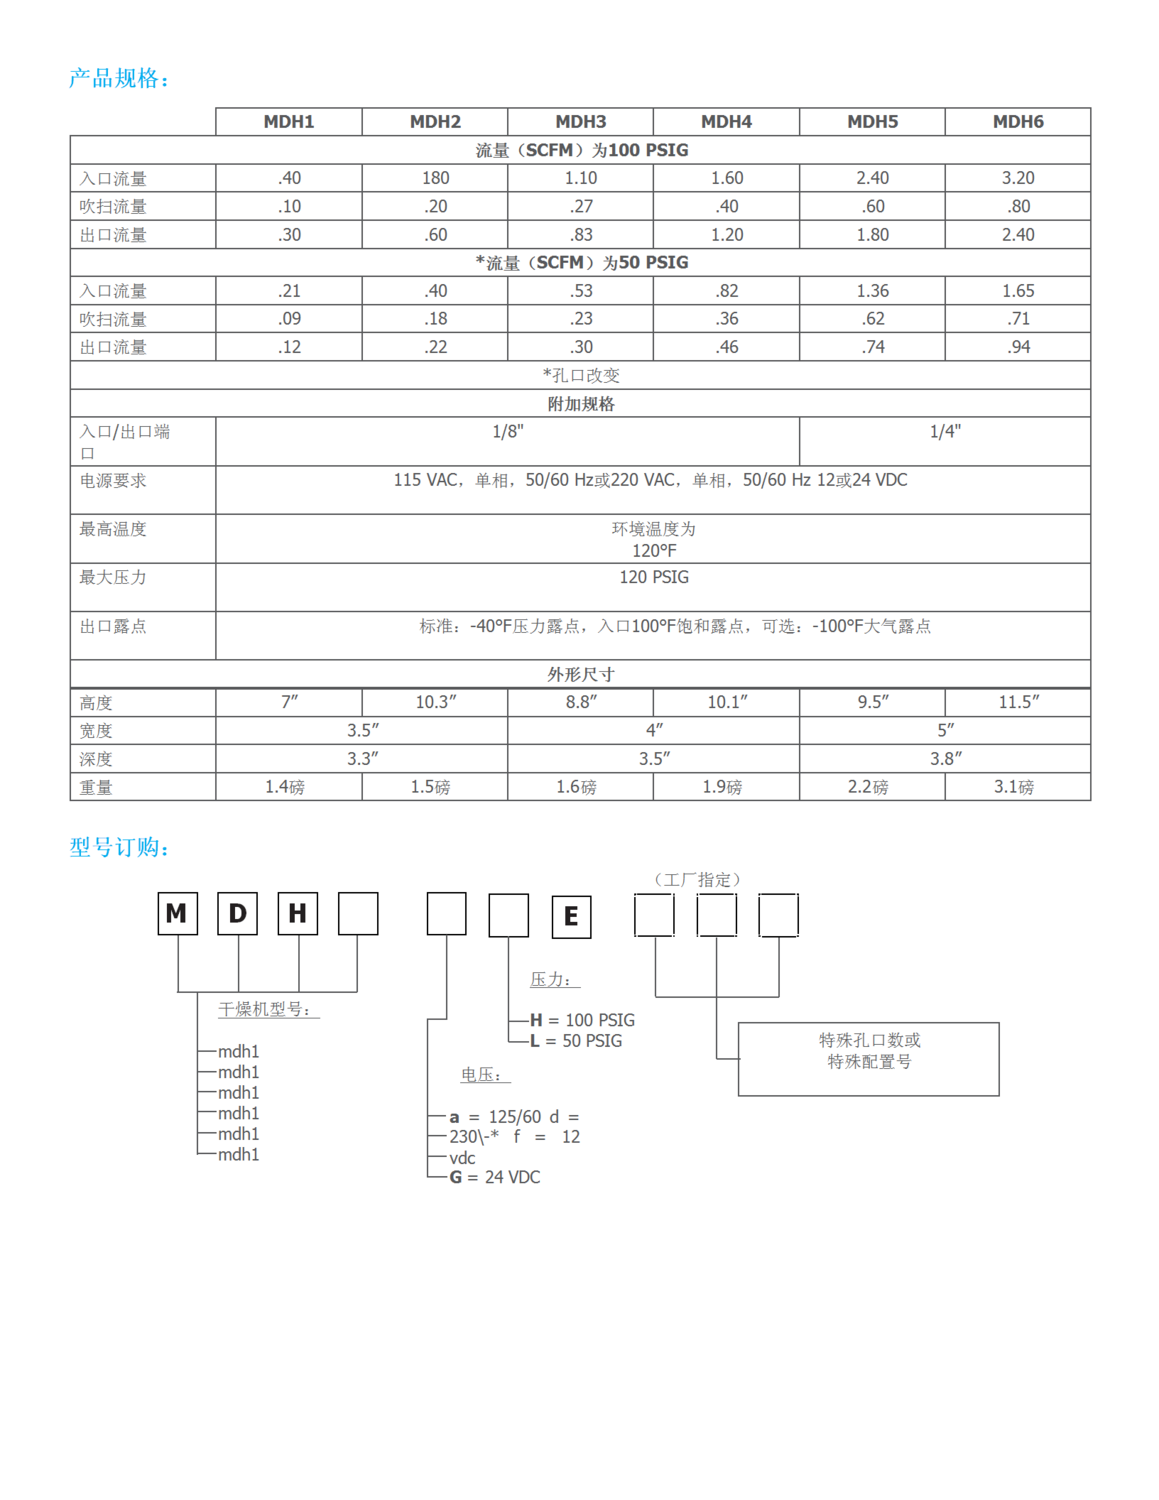 MDH 系列微型除湿空气干燥器规格表_201905160827364_translate_02.png